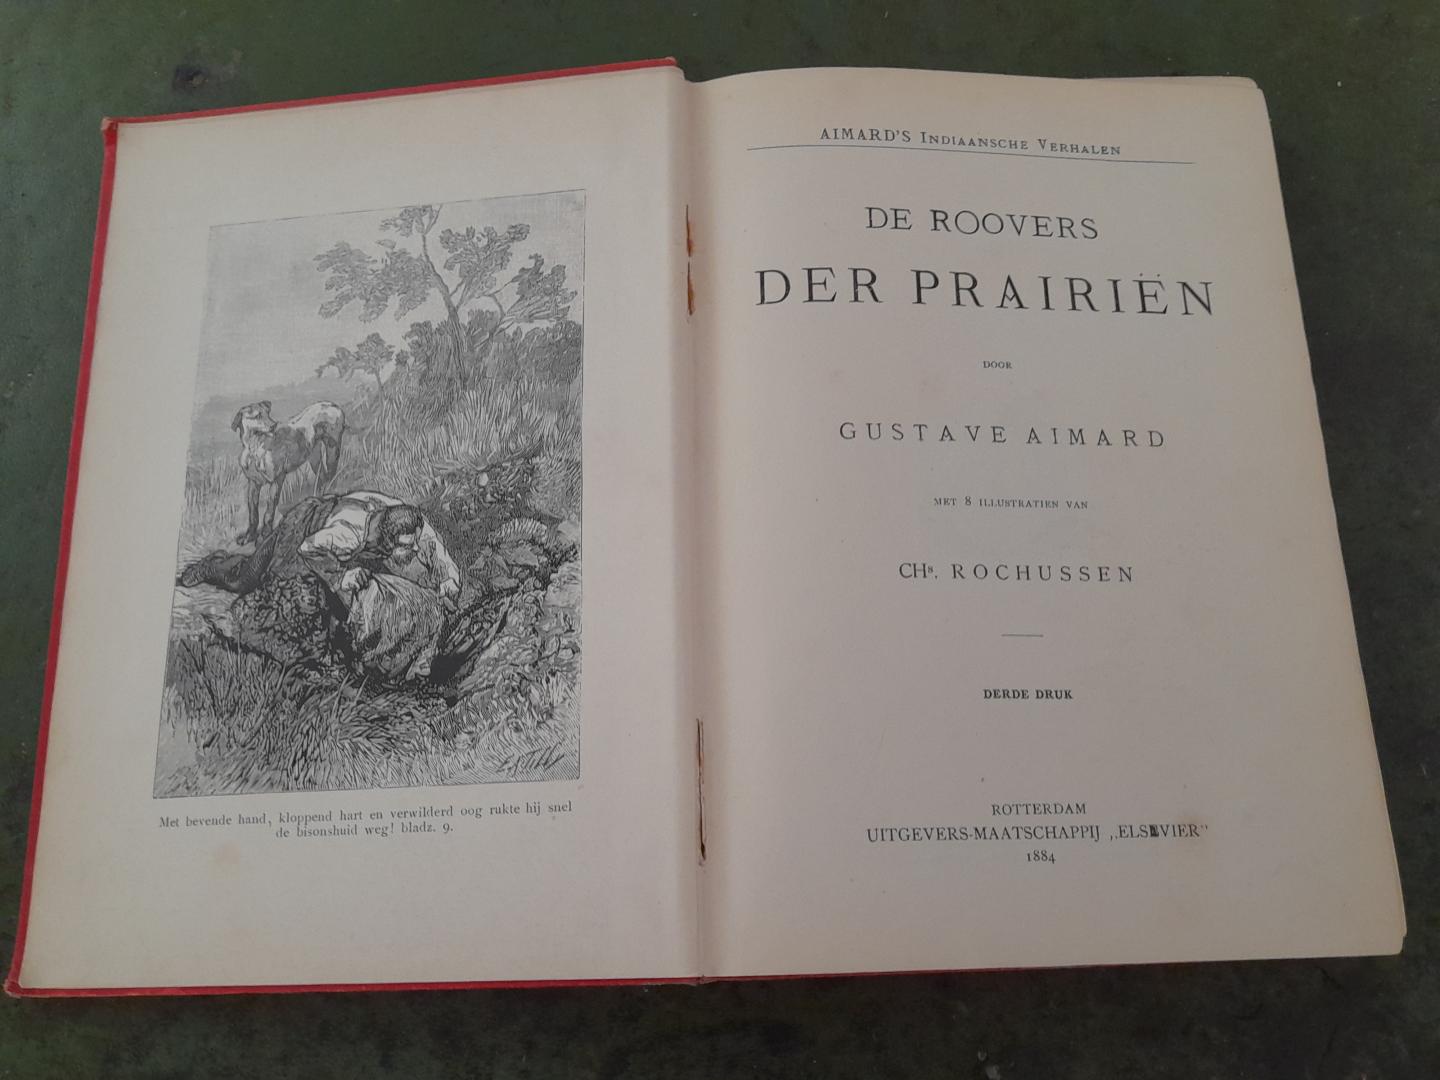 Aimard, Gustave / Rochussen, Chs., illustr. - De Roovers der Prairien. Aimard's Indiaansche Verhalen. met 8 illustratien